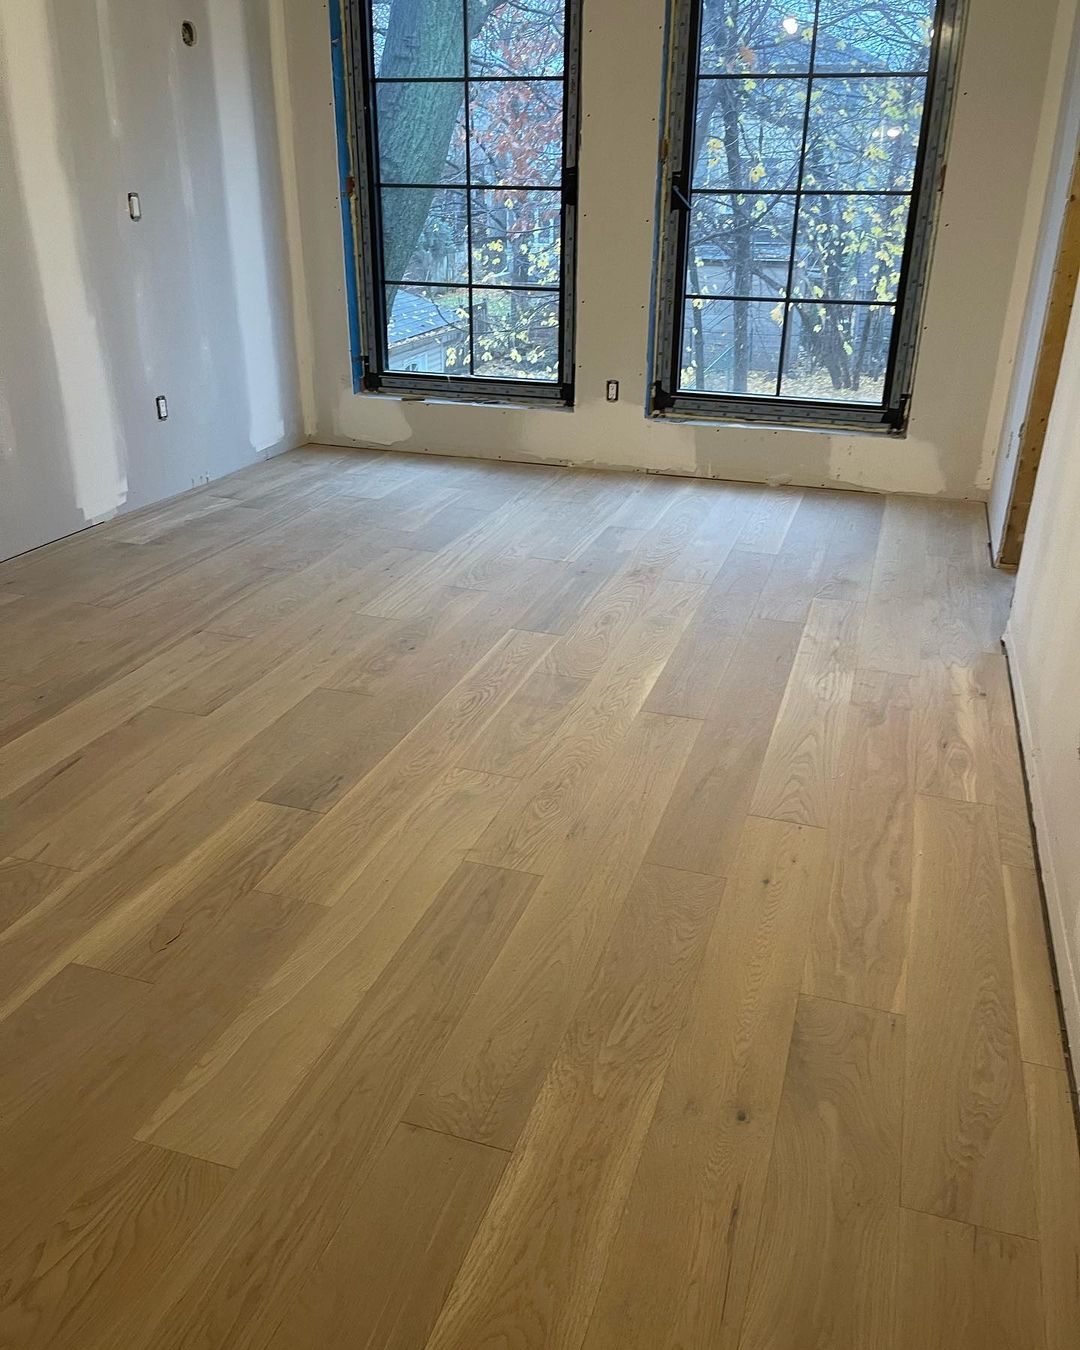 Engineered wood flooring repair for rooms